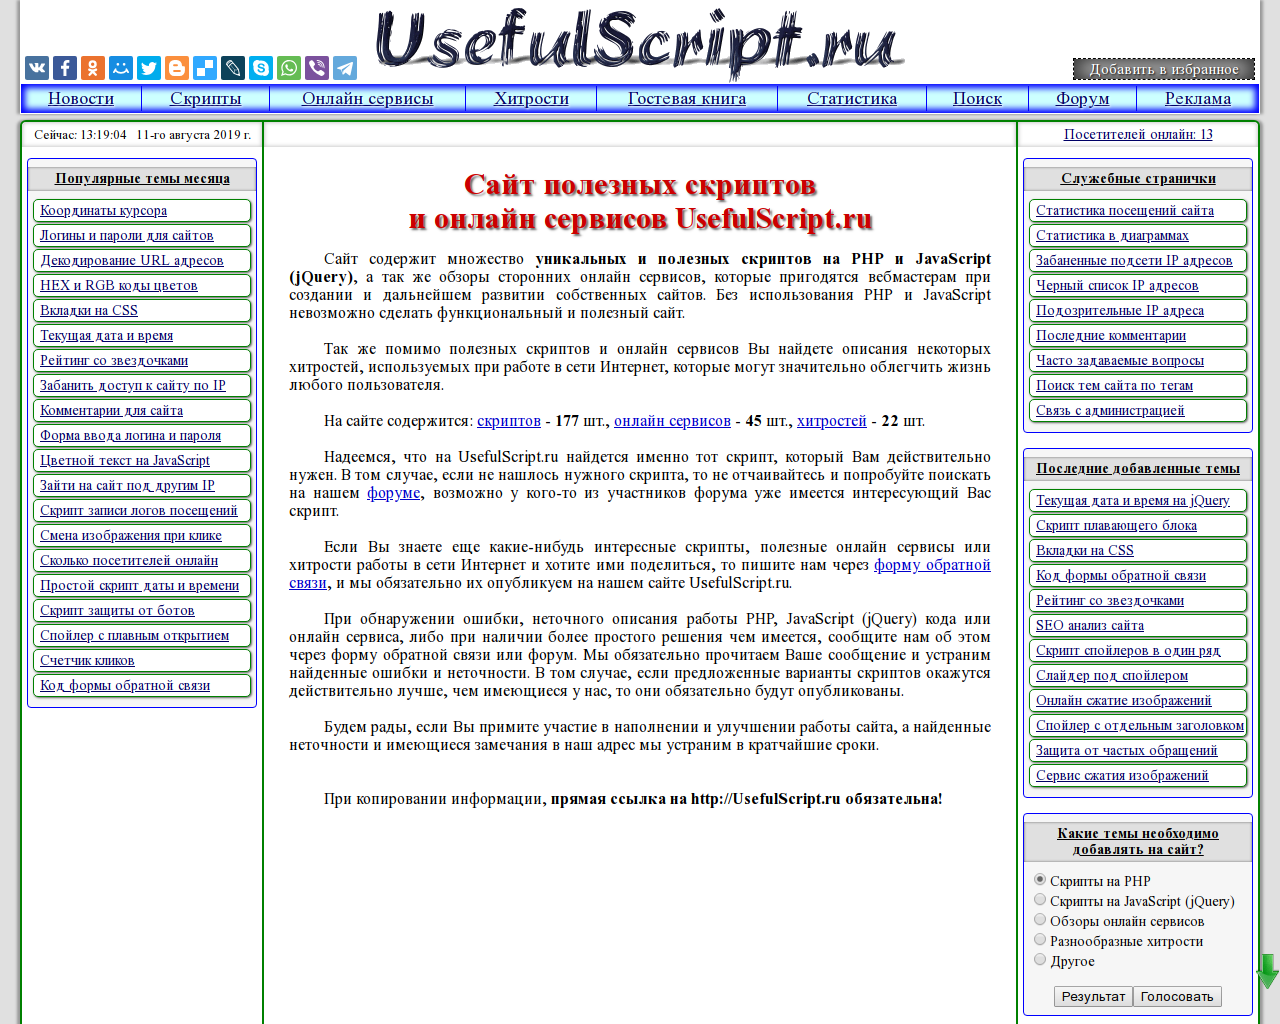 Изображение сайта usefulscript.ru в разрешении 1280x1024